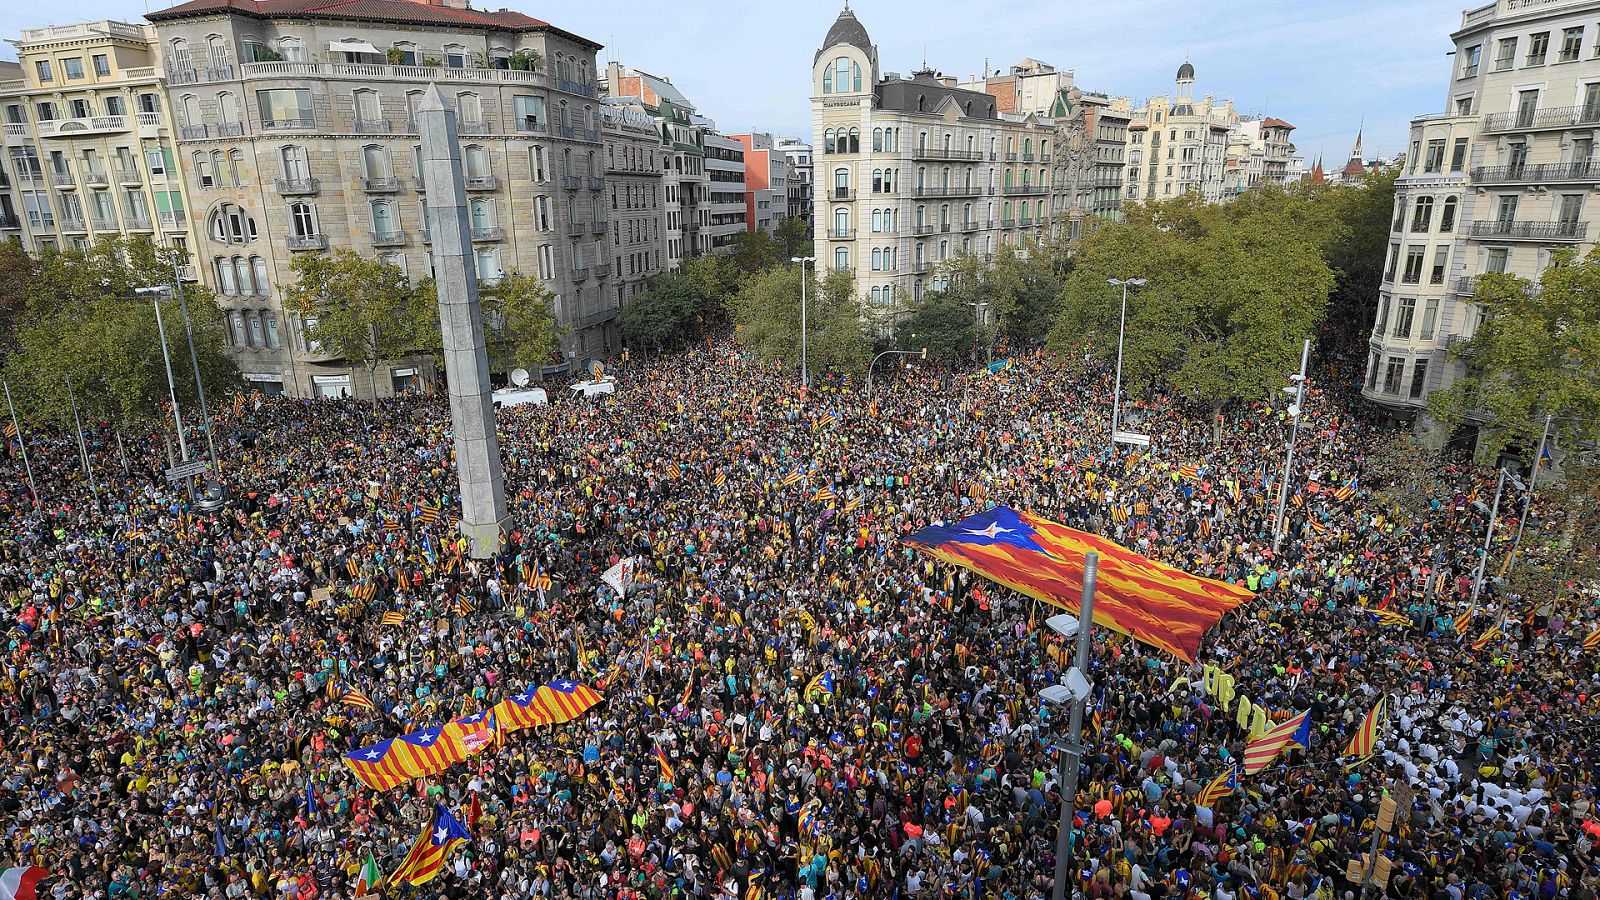 Resultat d'imatges per a "manifestacions barcelona"